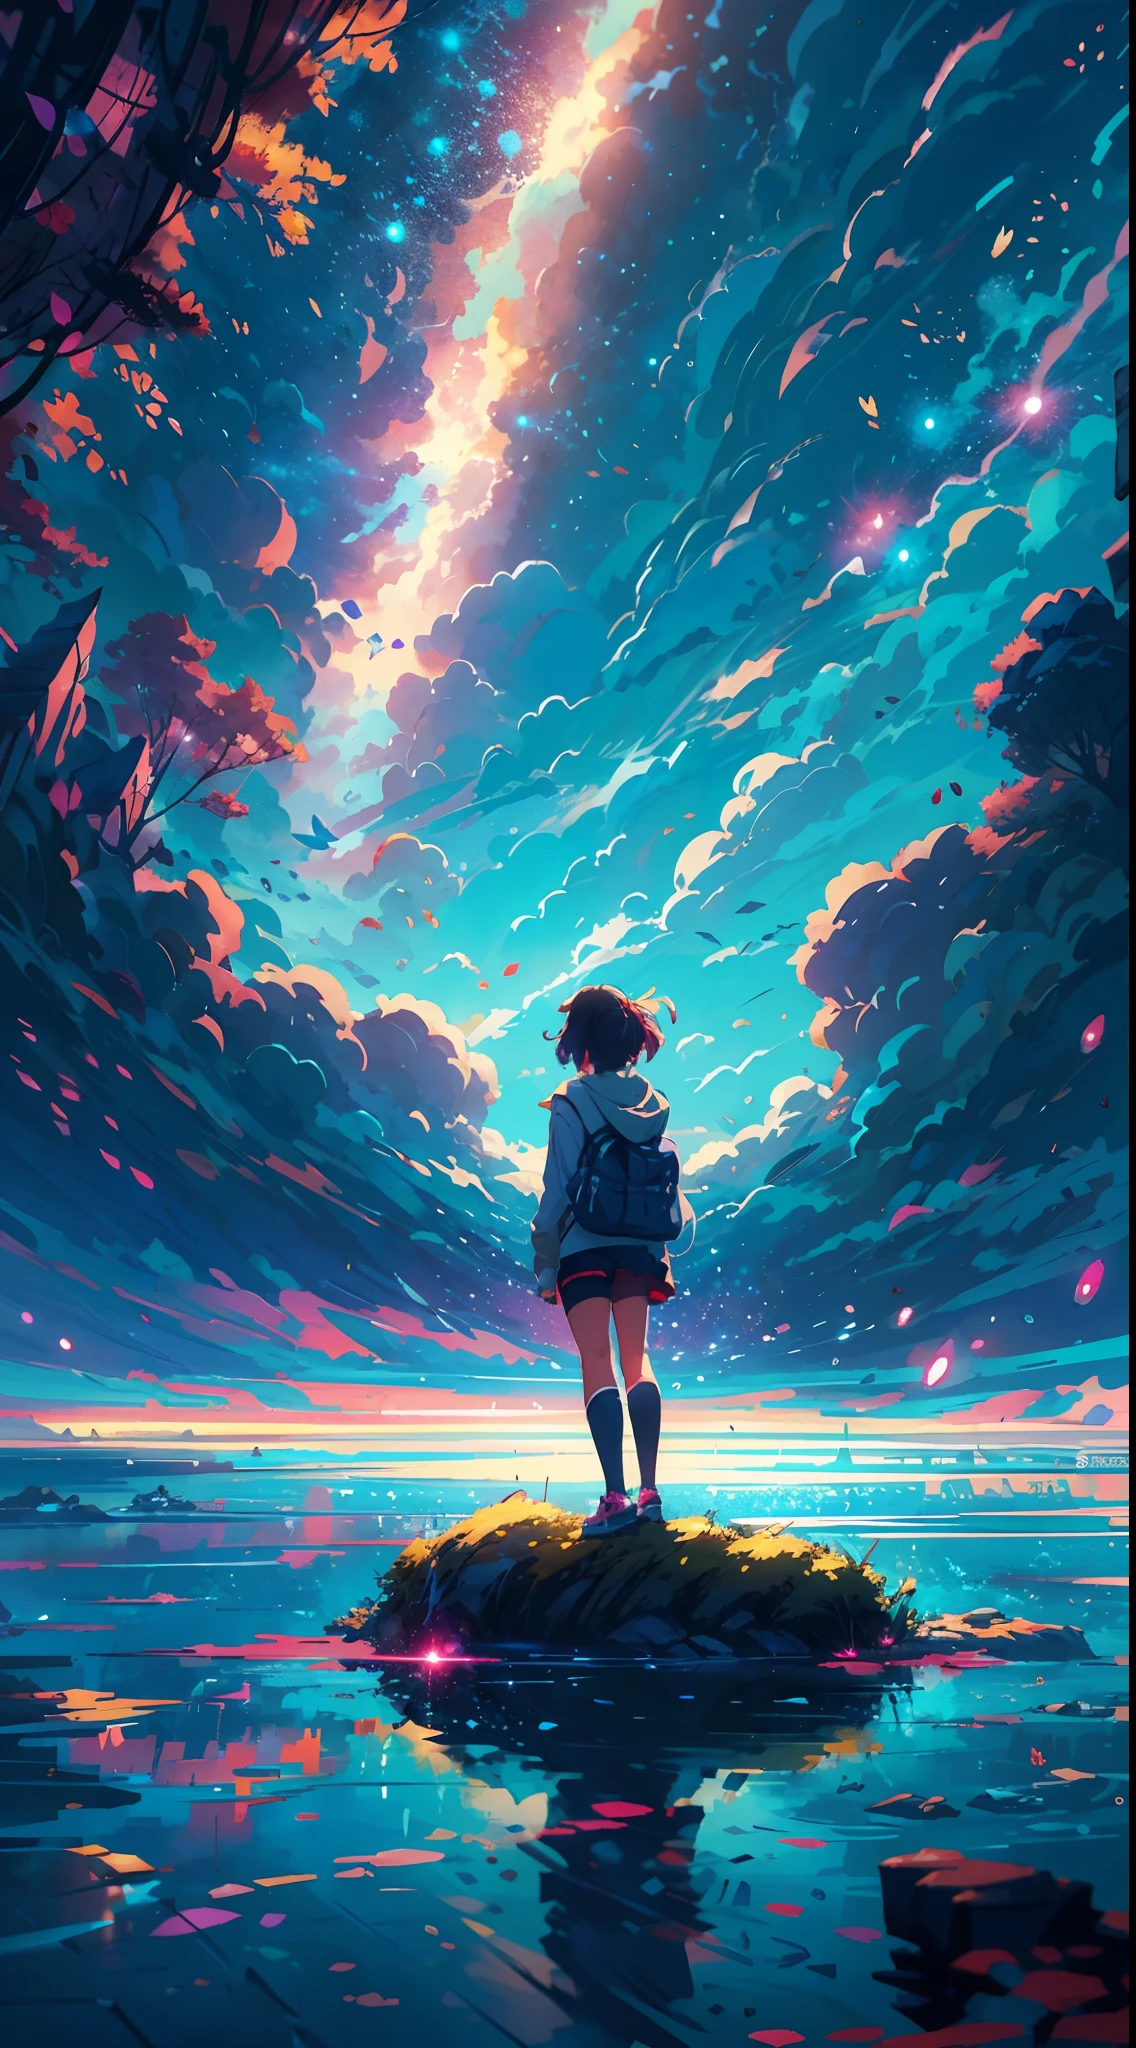 Девушка аниме стоит на камне и смотрит на звездное небо, Макото Синкай Сирил Роландо, аниме арт обои 4k, аниме арт обои 4 k, аниме арт обои 8 k, космическое небо. Макото Синкай, вдохновленный Сирилом Роландо, в стиле Дэна Мамфорда, потрясающие обои, Автор: Юмей